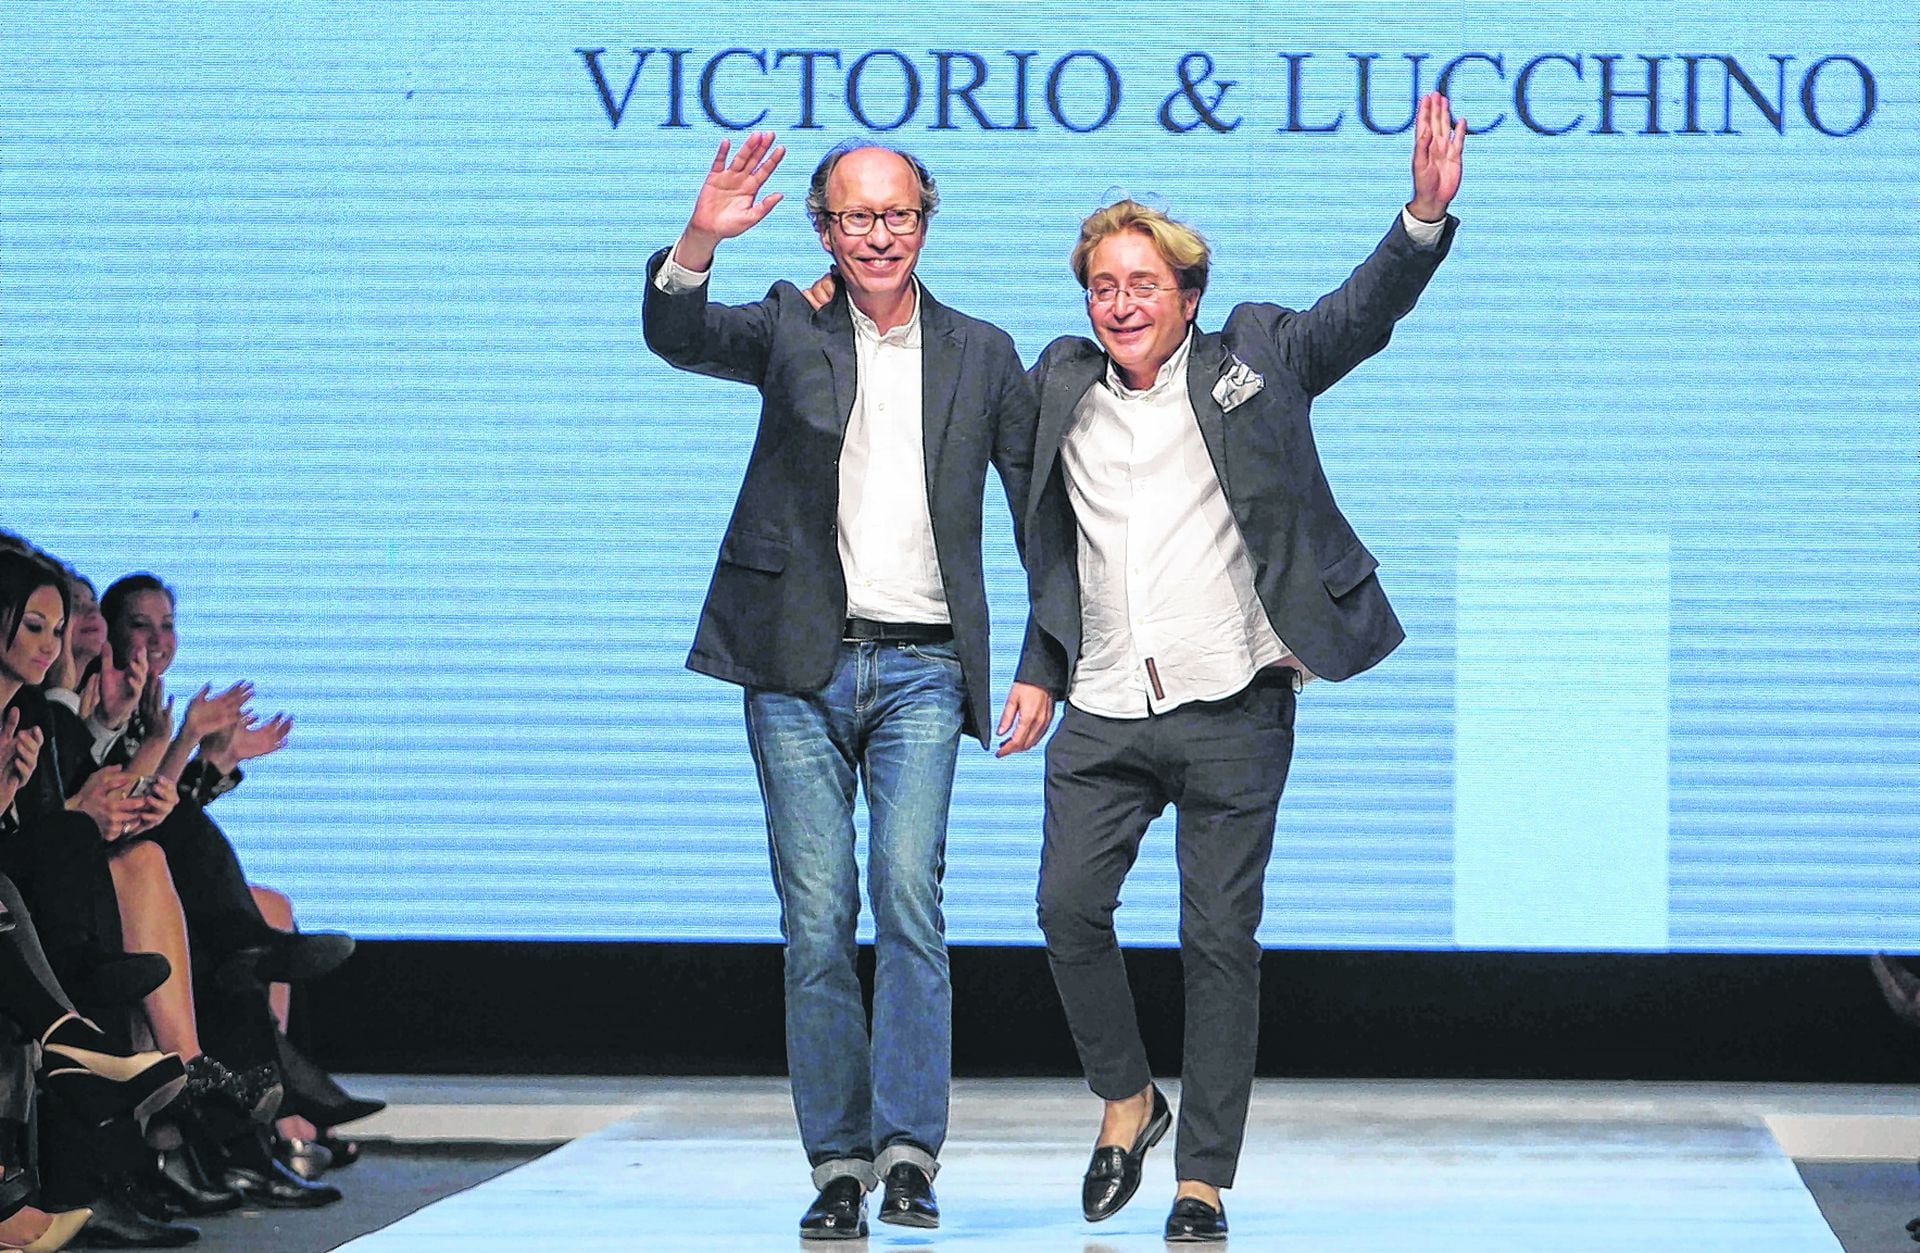 Victorio y Lucchino, la historia del ascenso y la caída de los diseñadores